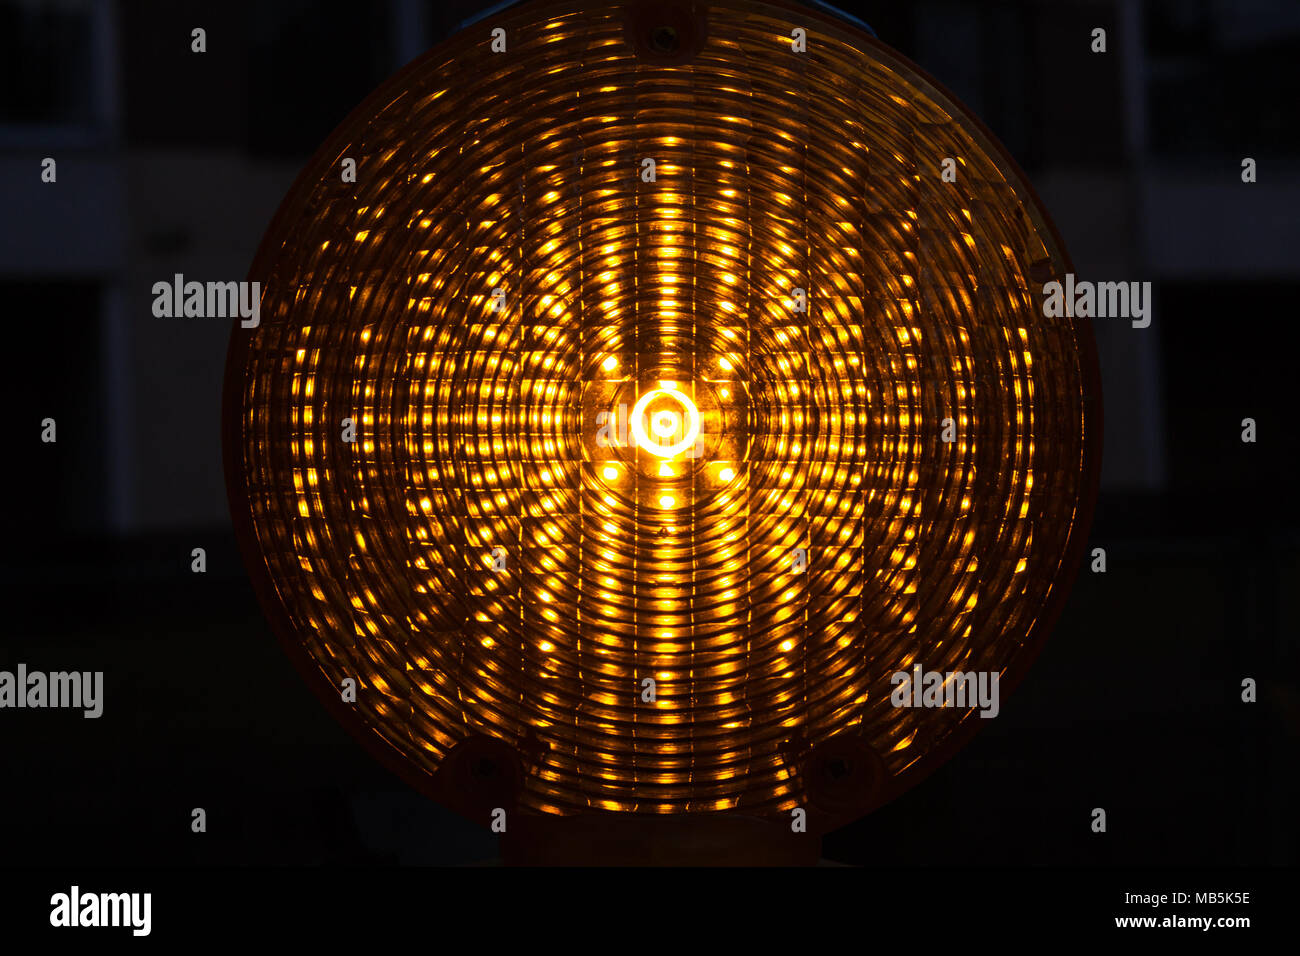 Orange Rundumleuchte auf weißen reflektierenden Hintergrund Stockfotografie  - Alamy